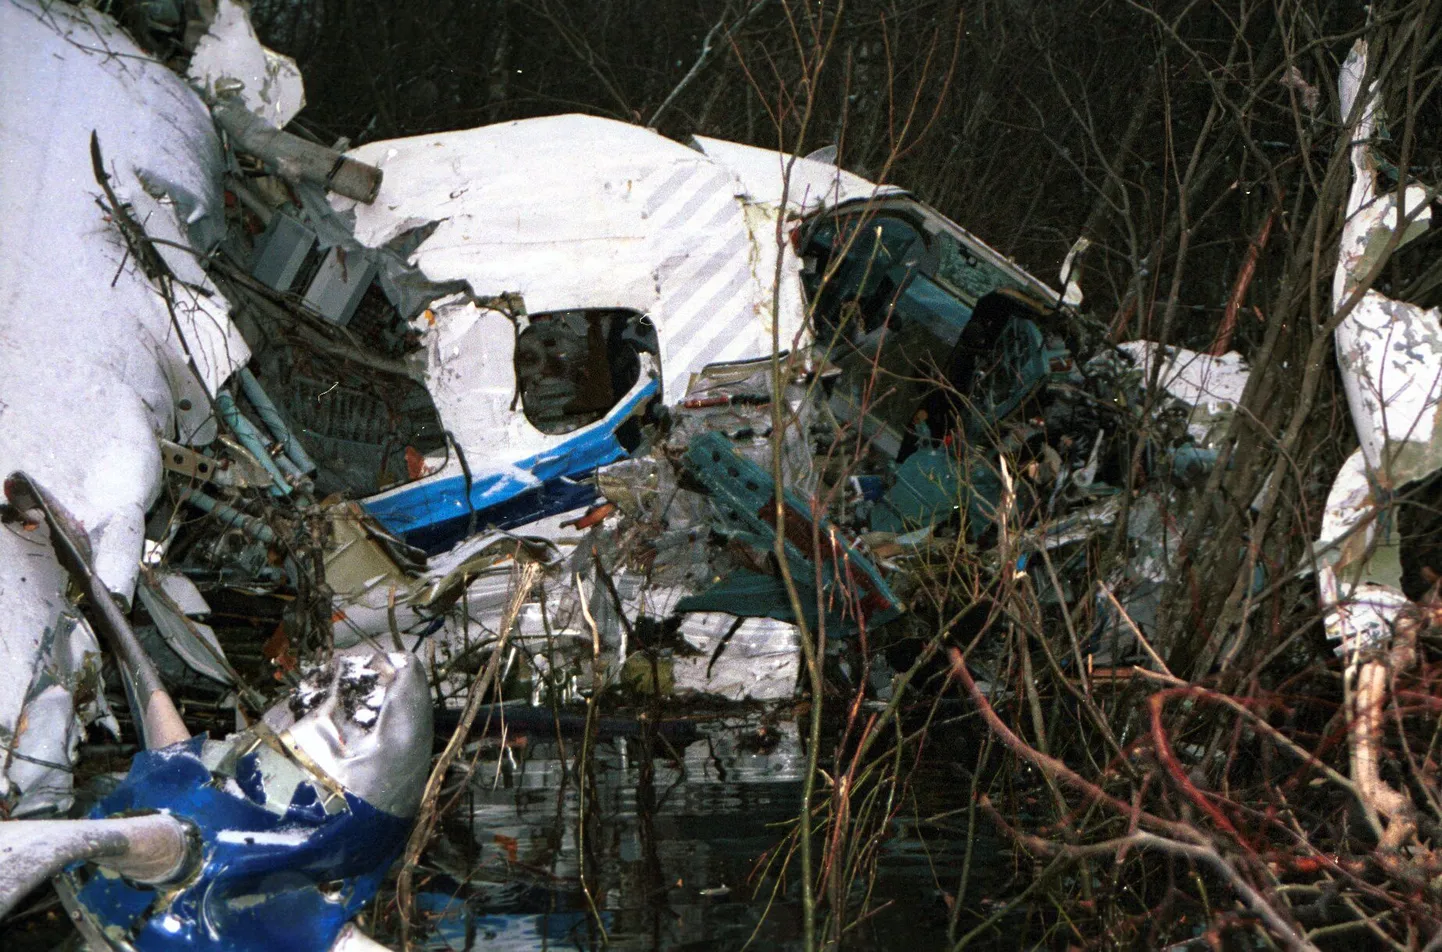 Tallinnast Kärdlasse teel olnud reisilennuki An-28 rusud Hiiumaal Soera
talumuuseumist mõnisada meetrit eemal soises metsas 24. novembril 2001. 
Firmale Enimex kuuluv reisilennuk, mis sõitis ELK Lennuliinide egiidi
all kukkus alla 23. novembri õhtul kell 18.35 Kärdlast 7-8 kilomeetrit
kirdes. Lennuki pardal oli 17 inimest - kolm meeskonnaliiget ja 14
reisijat. Õnnetuses hukkus 49-aastane Jaan Alas. Ülejäänud said erinevas
raskusastmes vigastusi.